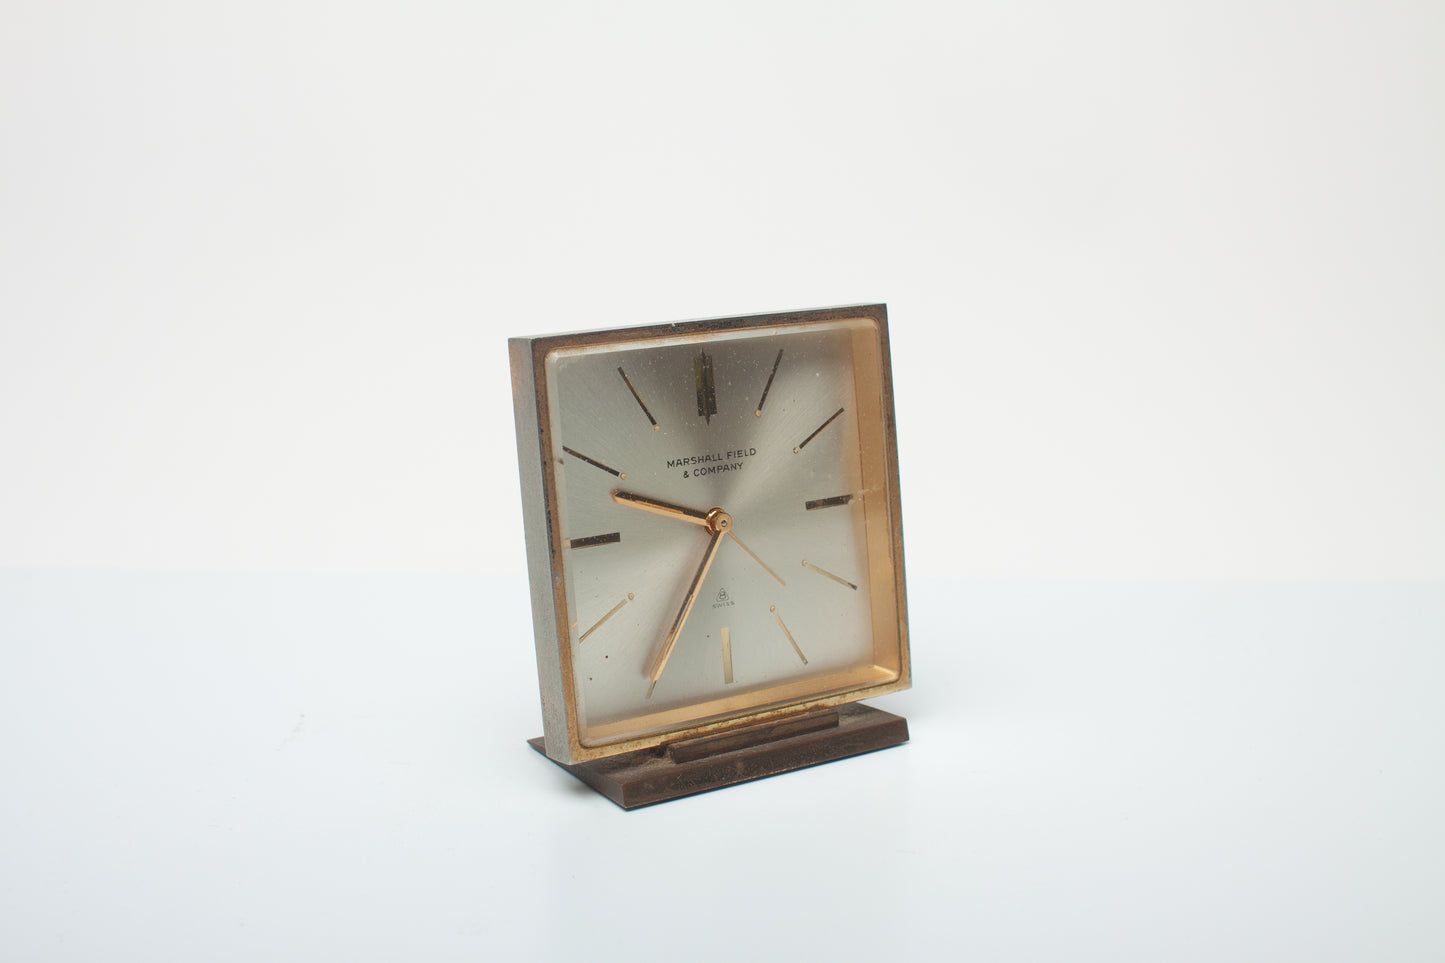 Lot 86- Assortment of Five Desk Clocks